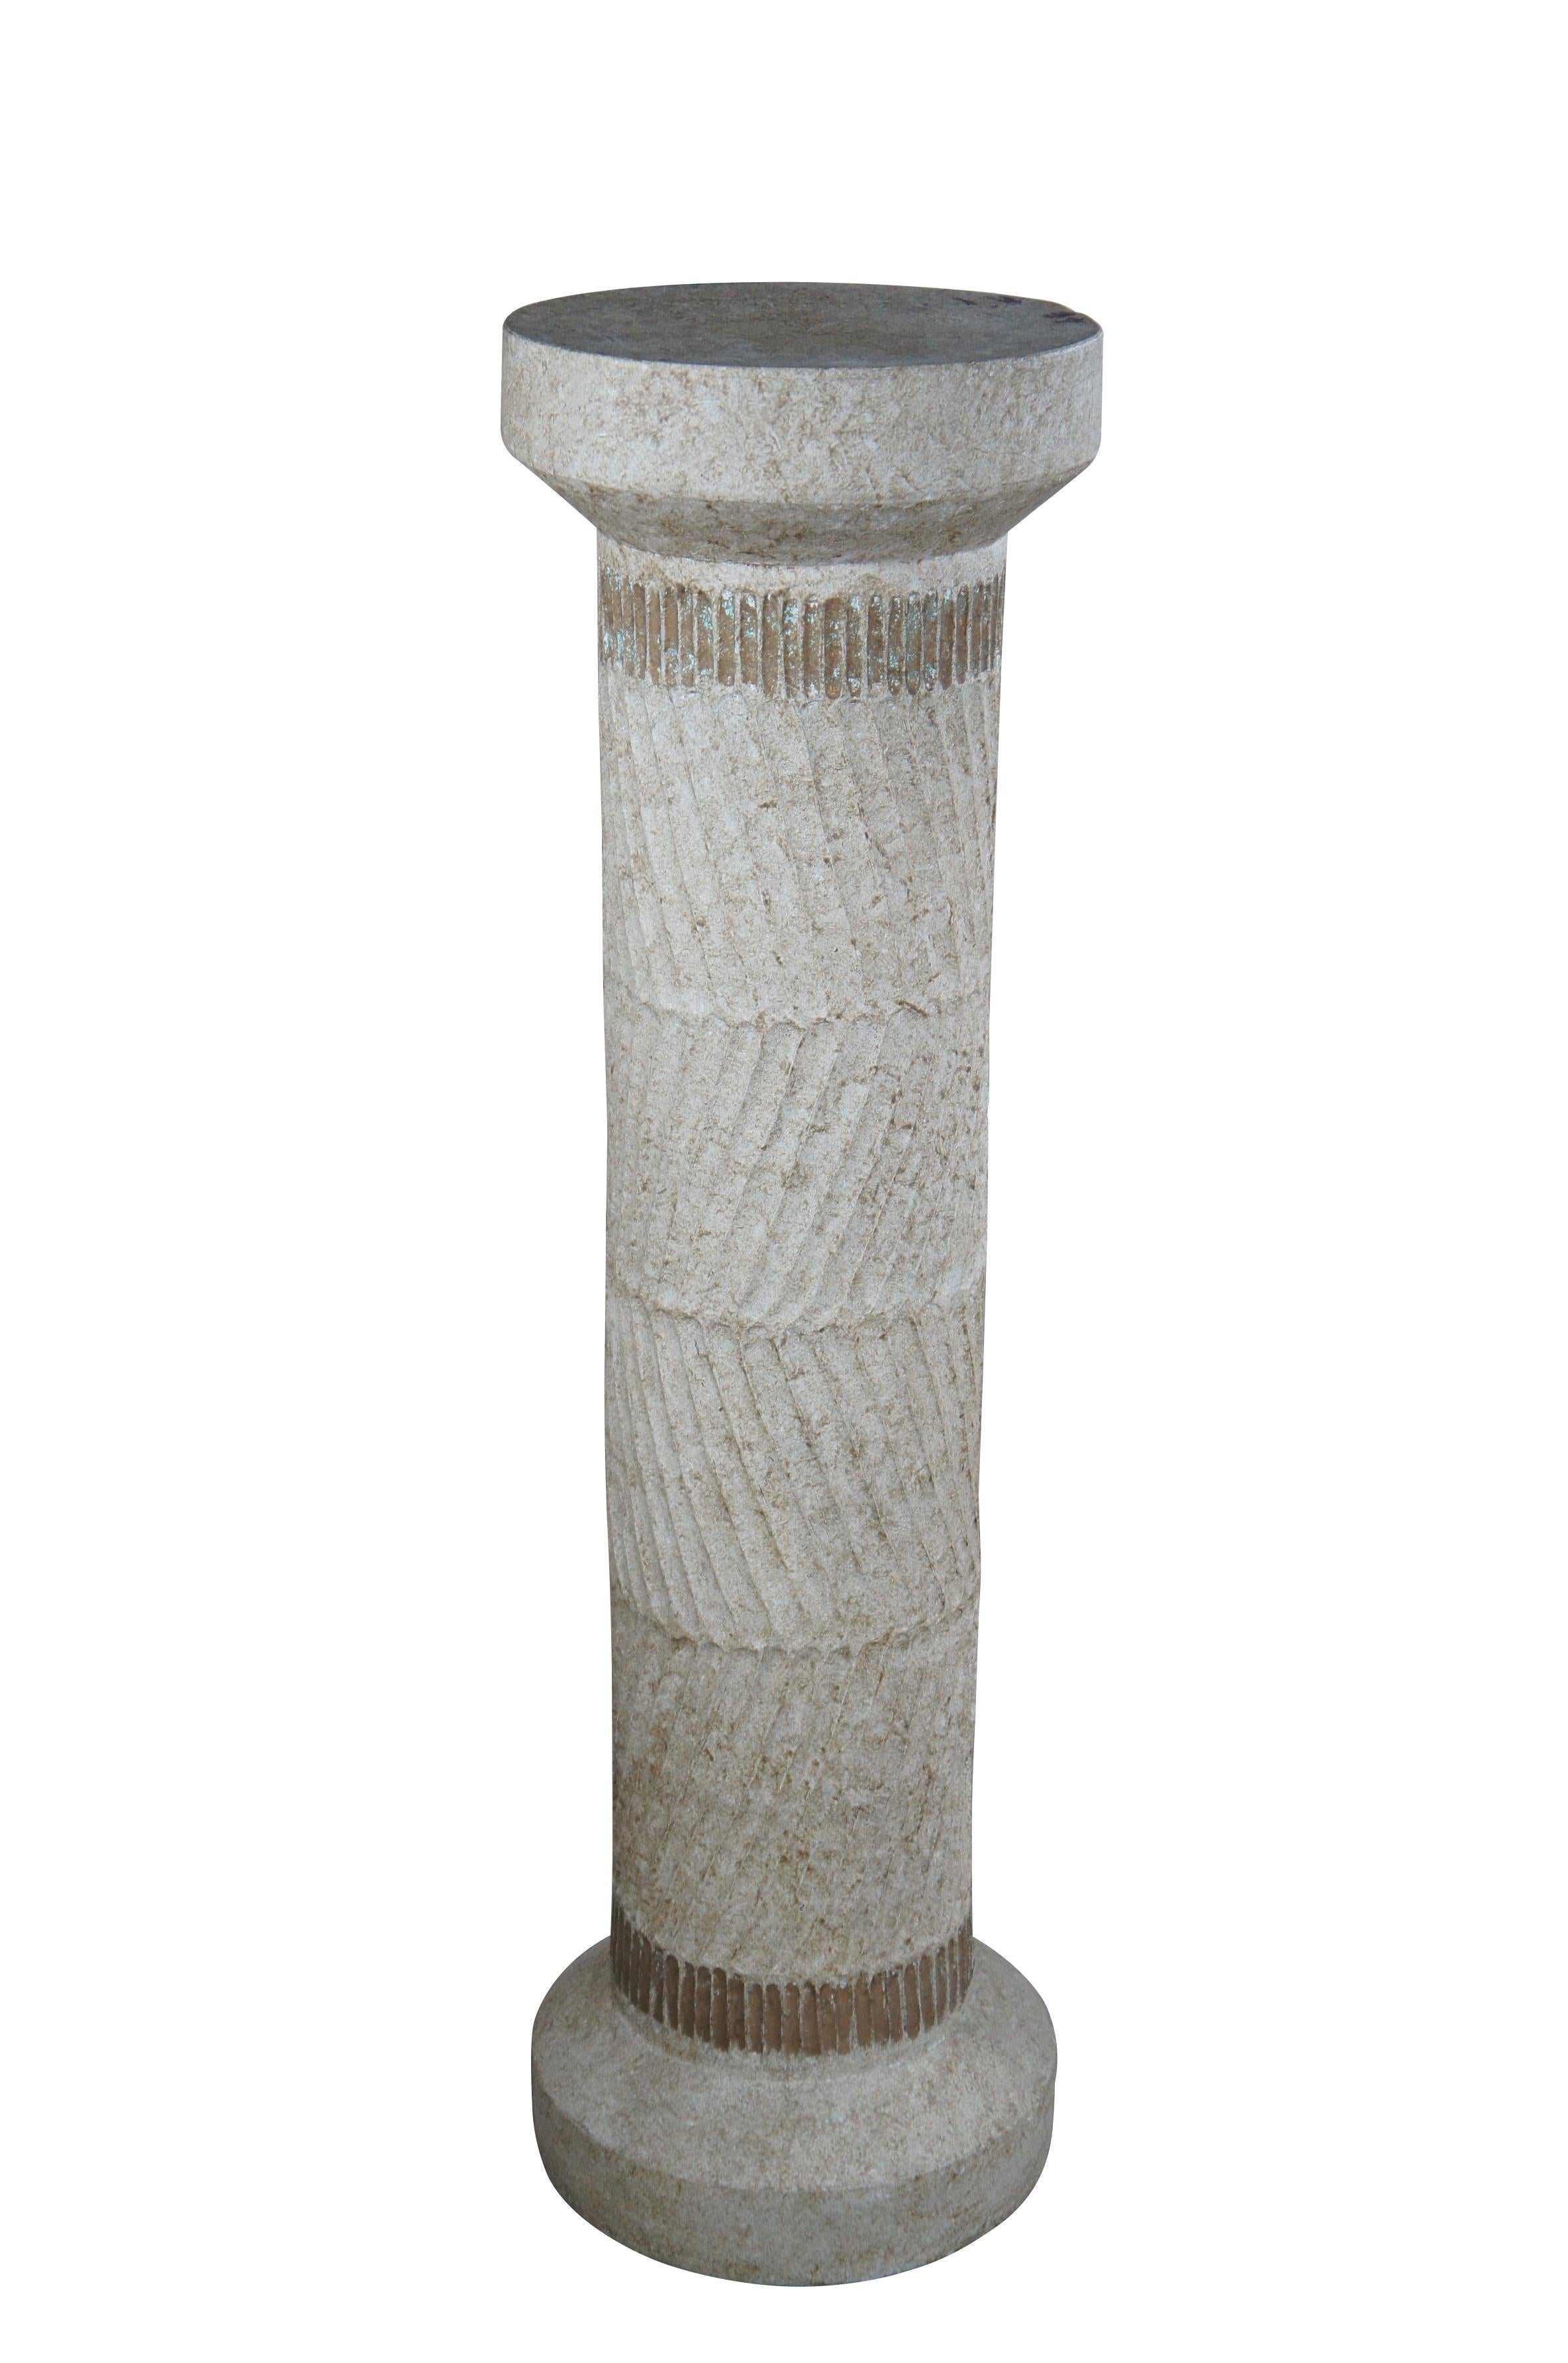 Piédestal ou sculpture / présentoir d'inspiration néoclassique. Formé de craie (plâtre) avec une forme de colonne ronde au fini vieilli.

Dimensions :
14